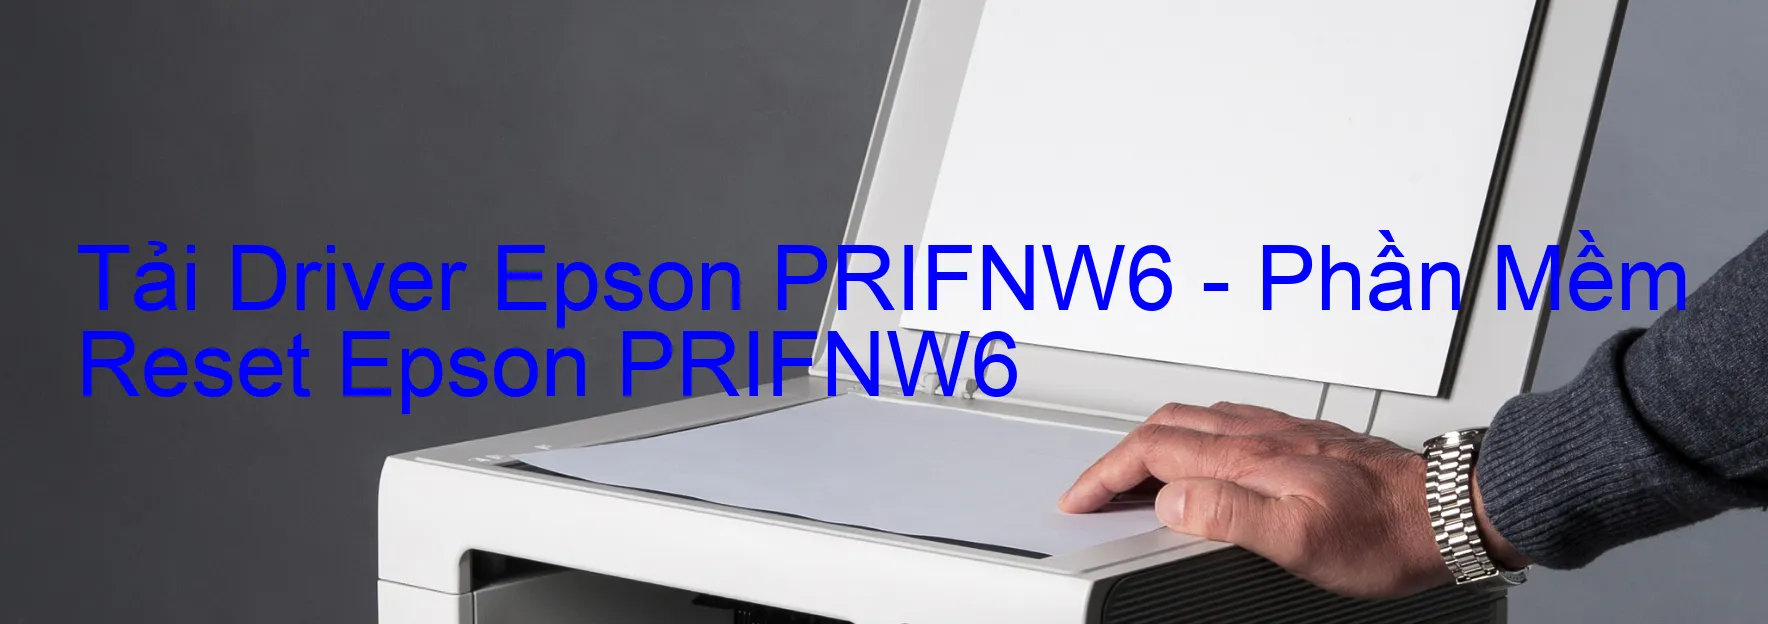 Driver Epson PRIFNW6, Phần Mềm Reset Epson PRIFNW6